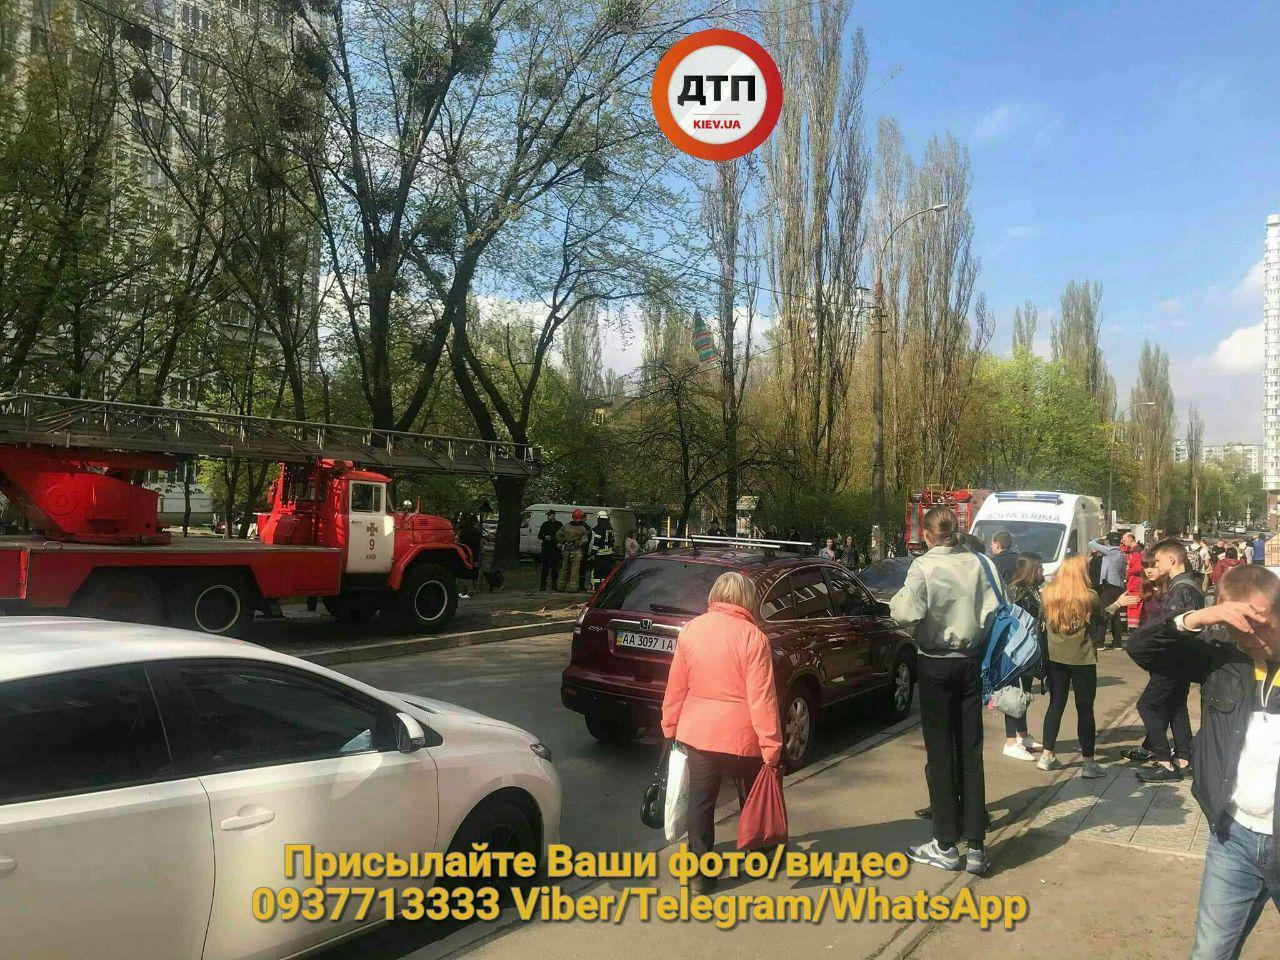 "Свесила ноги вниз и сидит": в Киеве женщина грозилась спрыгнуть с многоэтажки